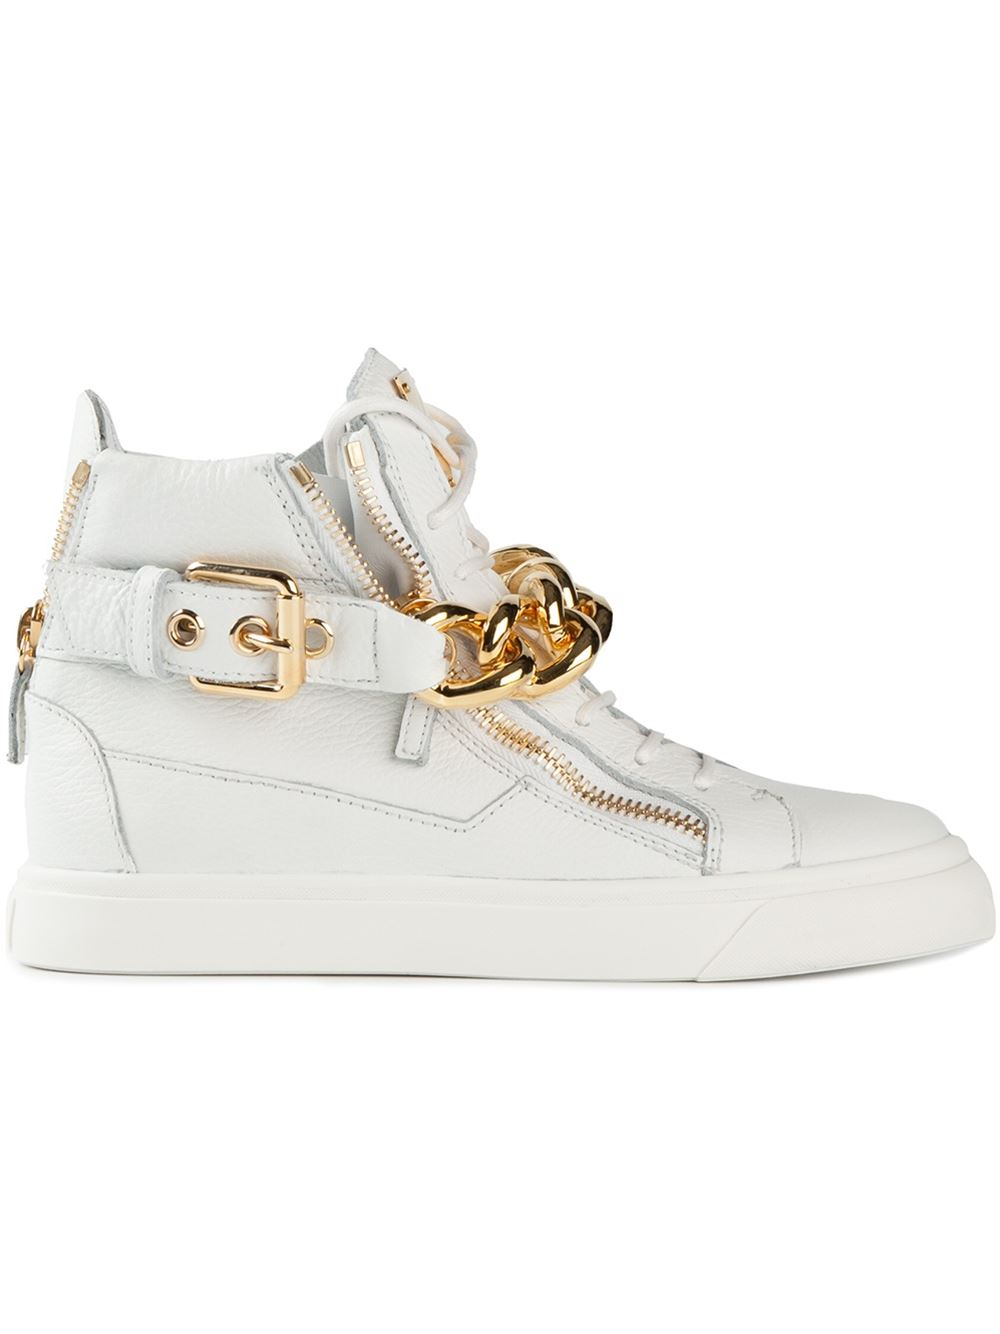 mild Somatisk celle velstand Giuseppe Zanotti Gold Chain Sneakers in White - Lyst